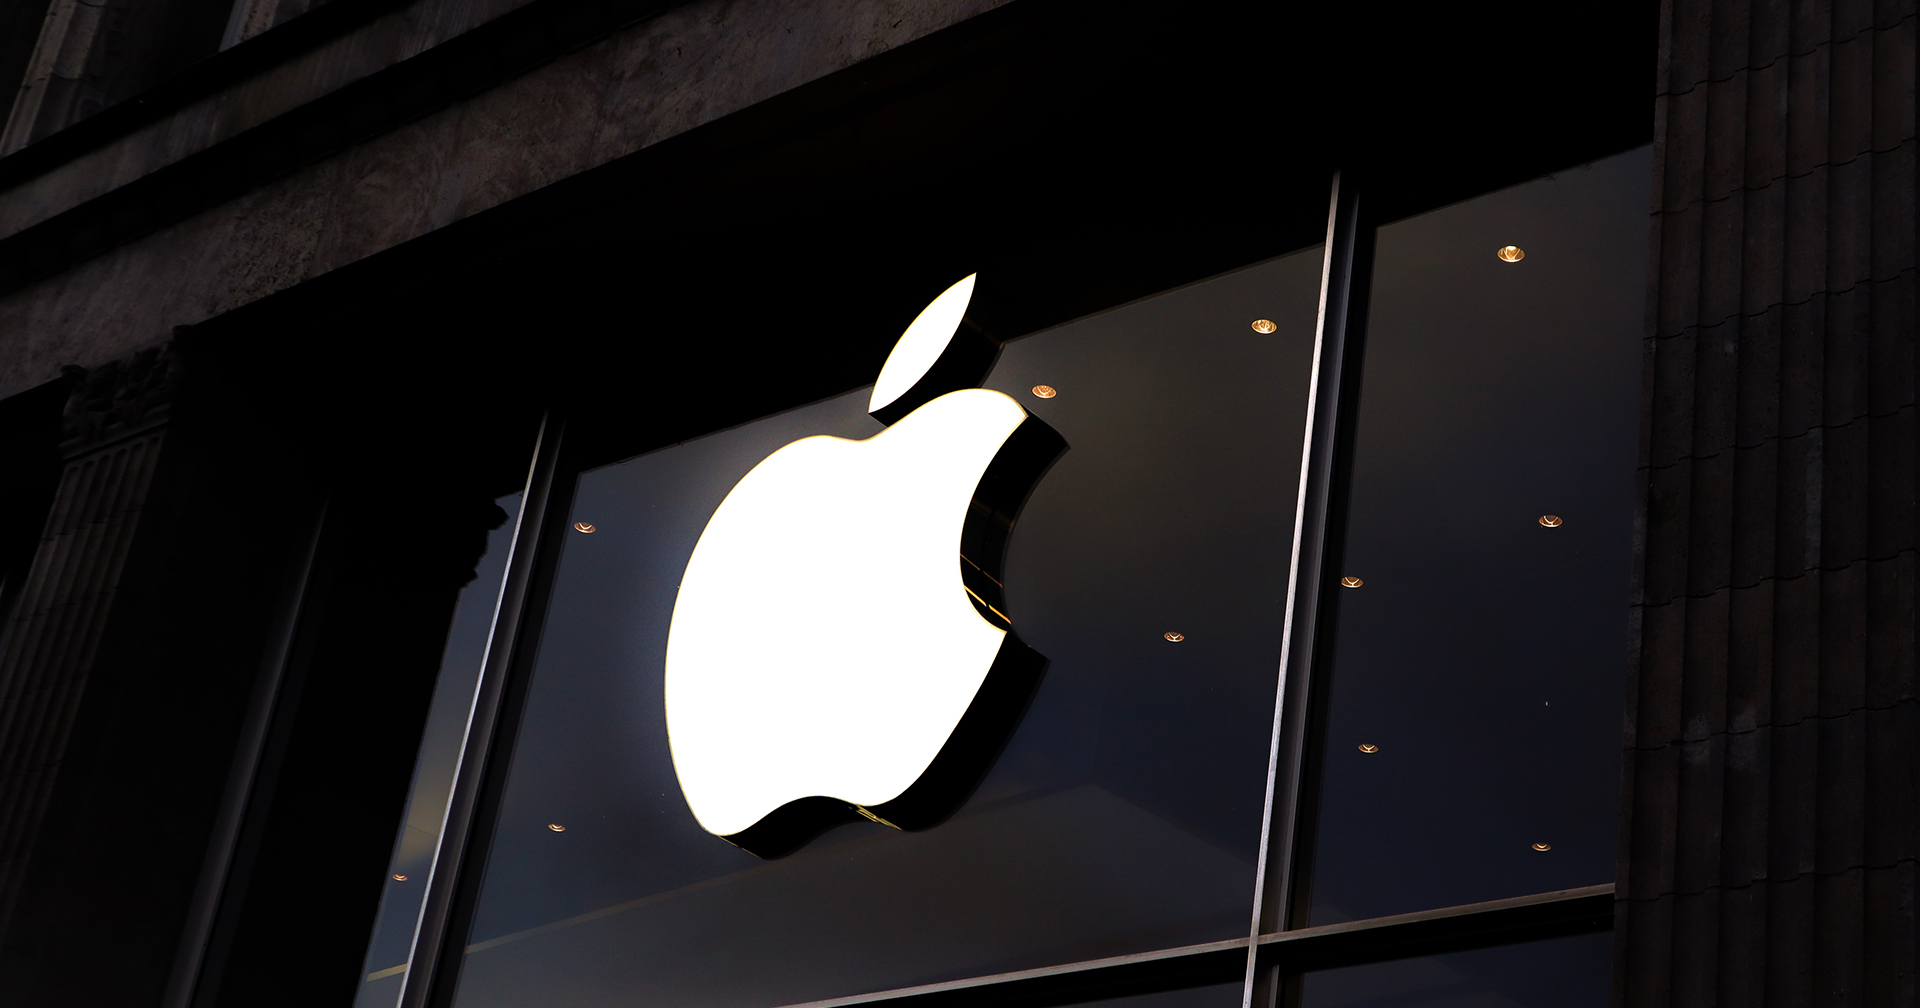 Apple Store ทั่วสหรัฐฯ กลับมาเปิดให้บริการอีกครั้งในรอบเกือบ 1 ปี